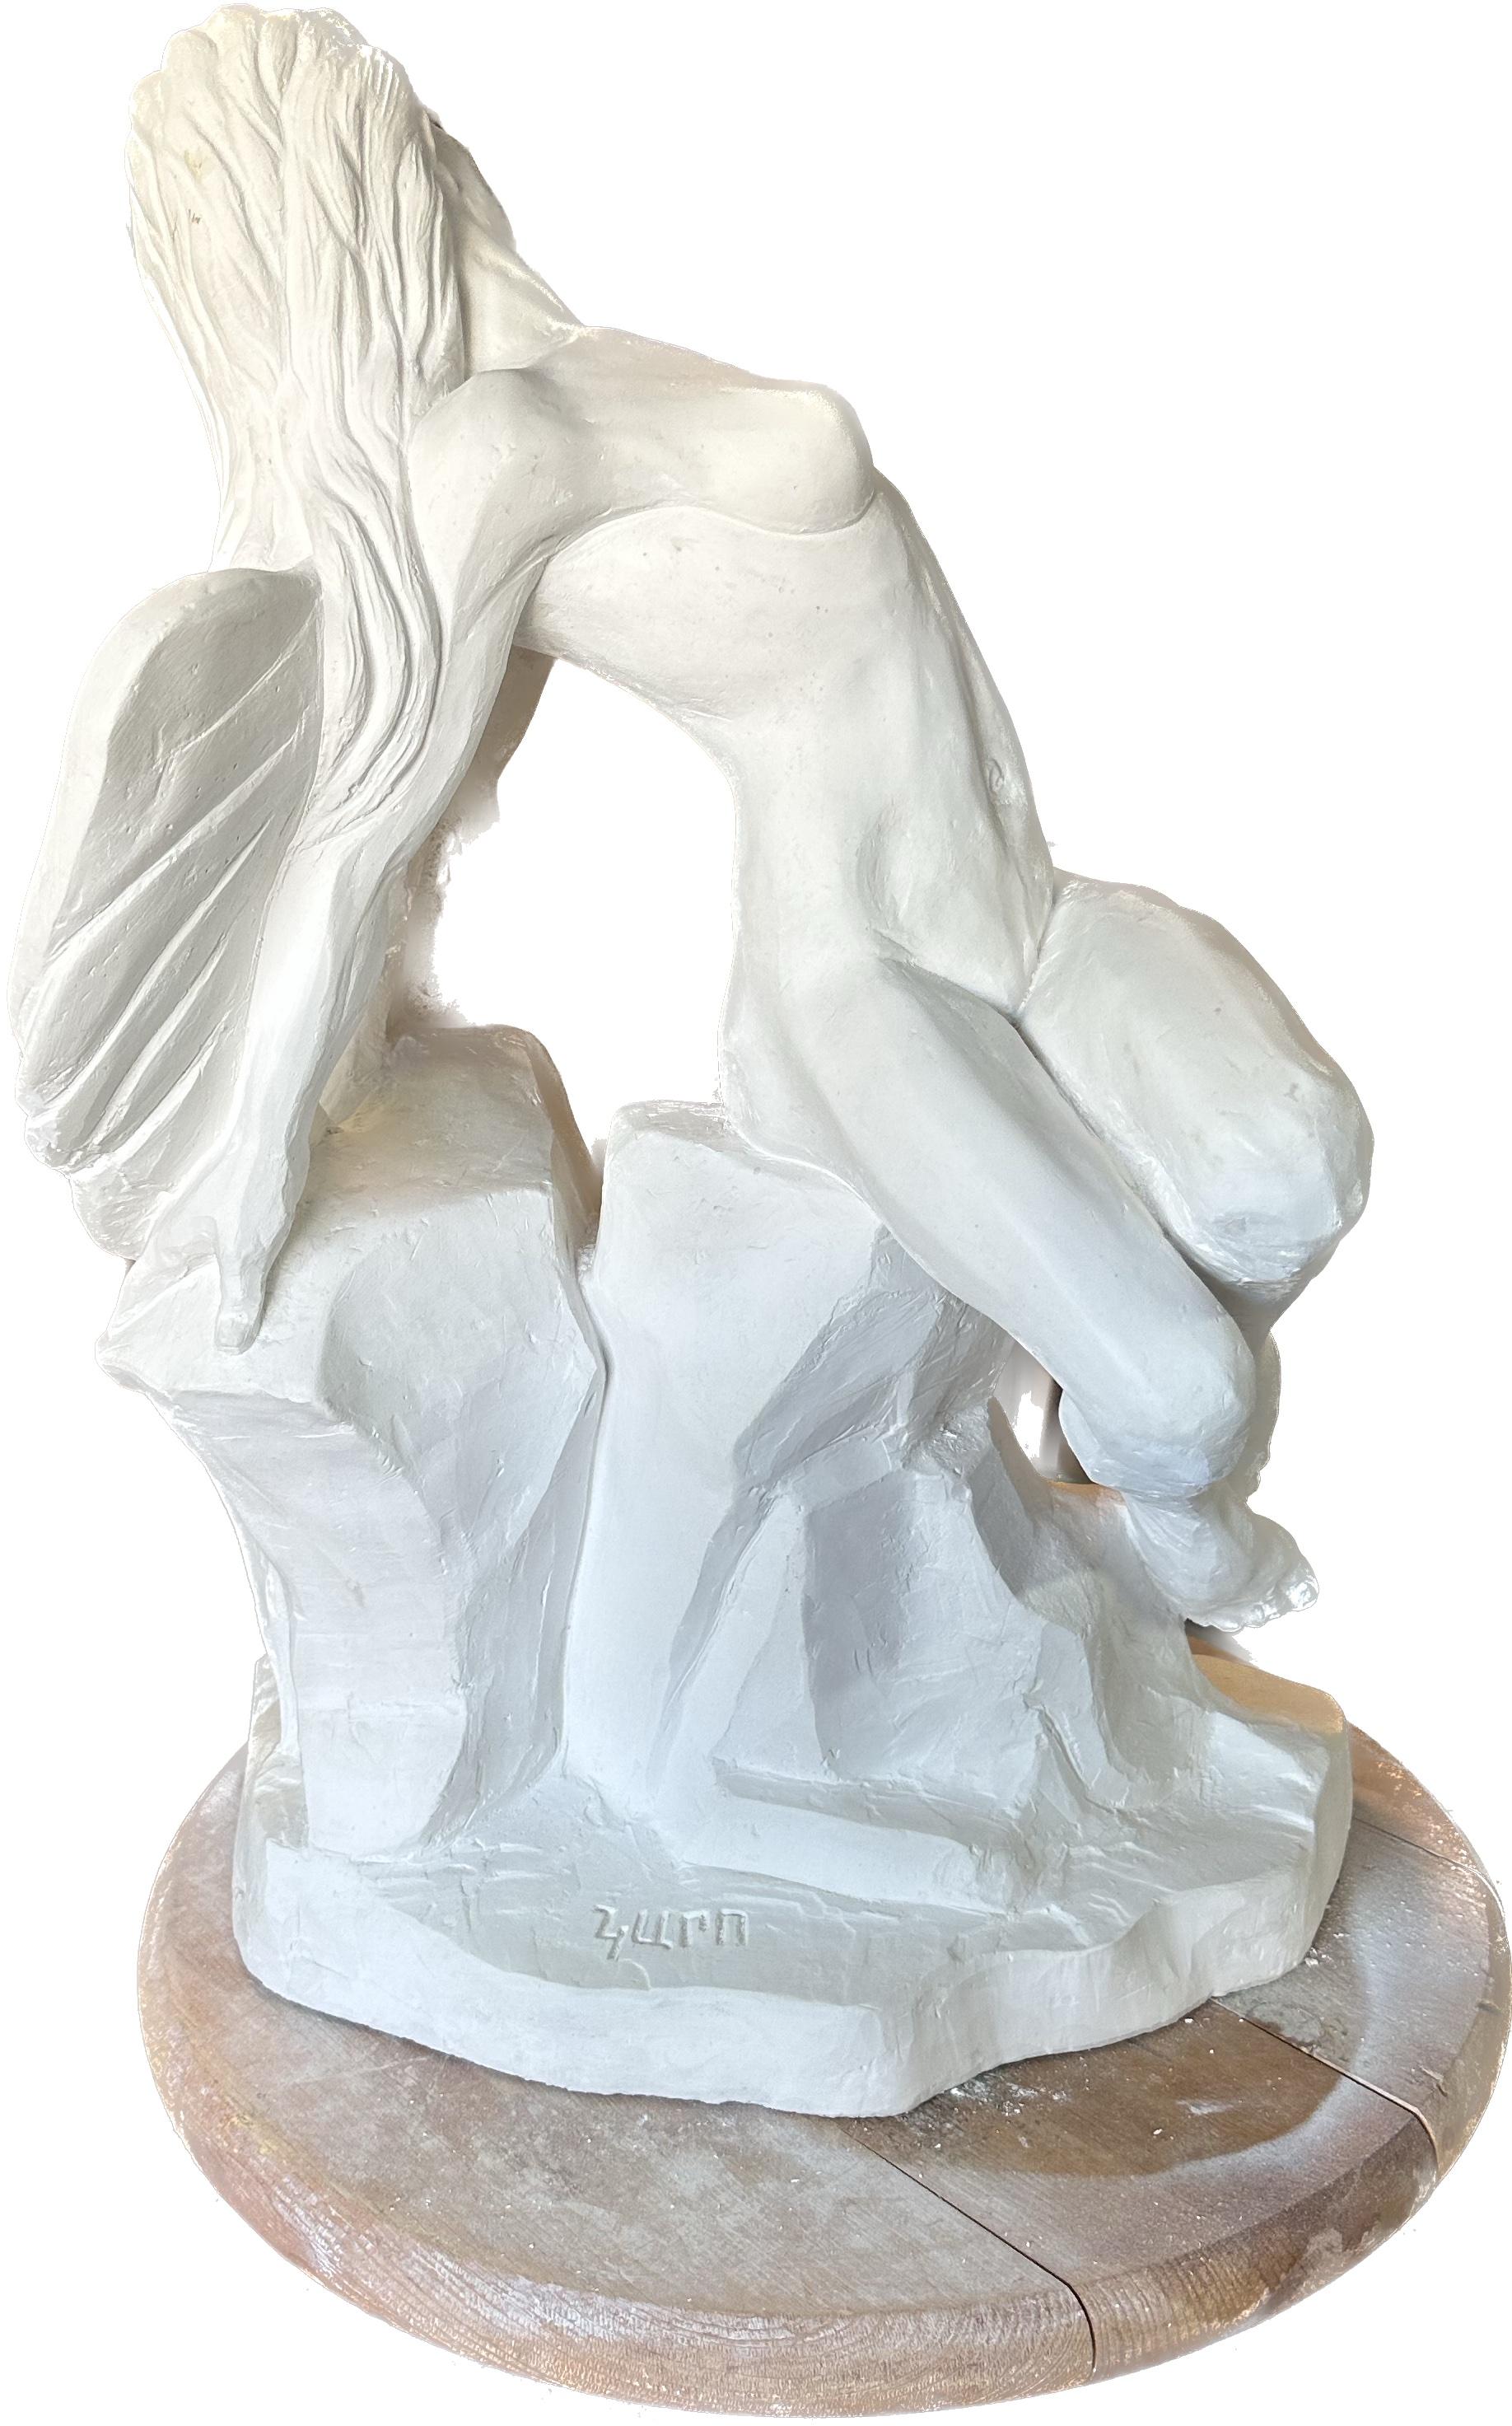 Karapet Balakeseryan  (Garo) Figurative Sculpture – Fallen Angel, Skulptur, Hydro-Stein, handgefertigt von Garo, Unikat, Skulptur